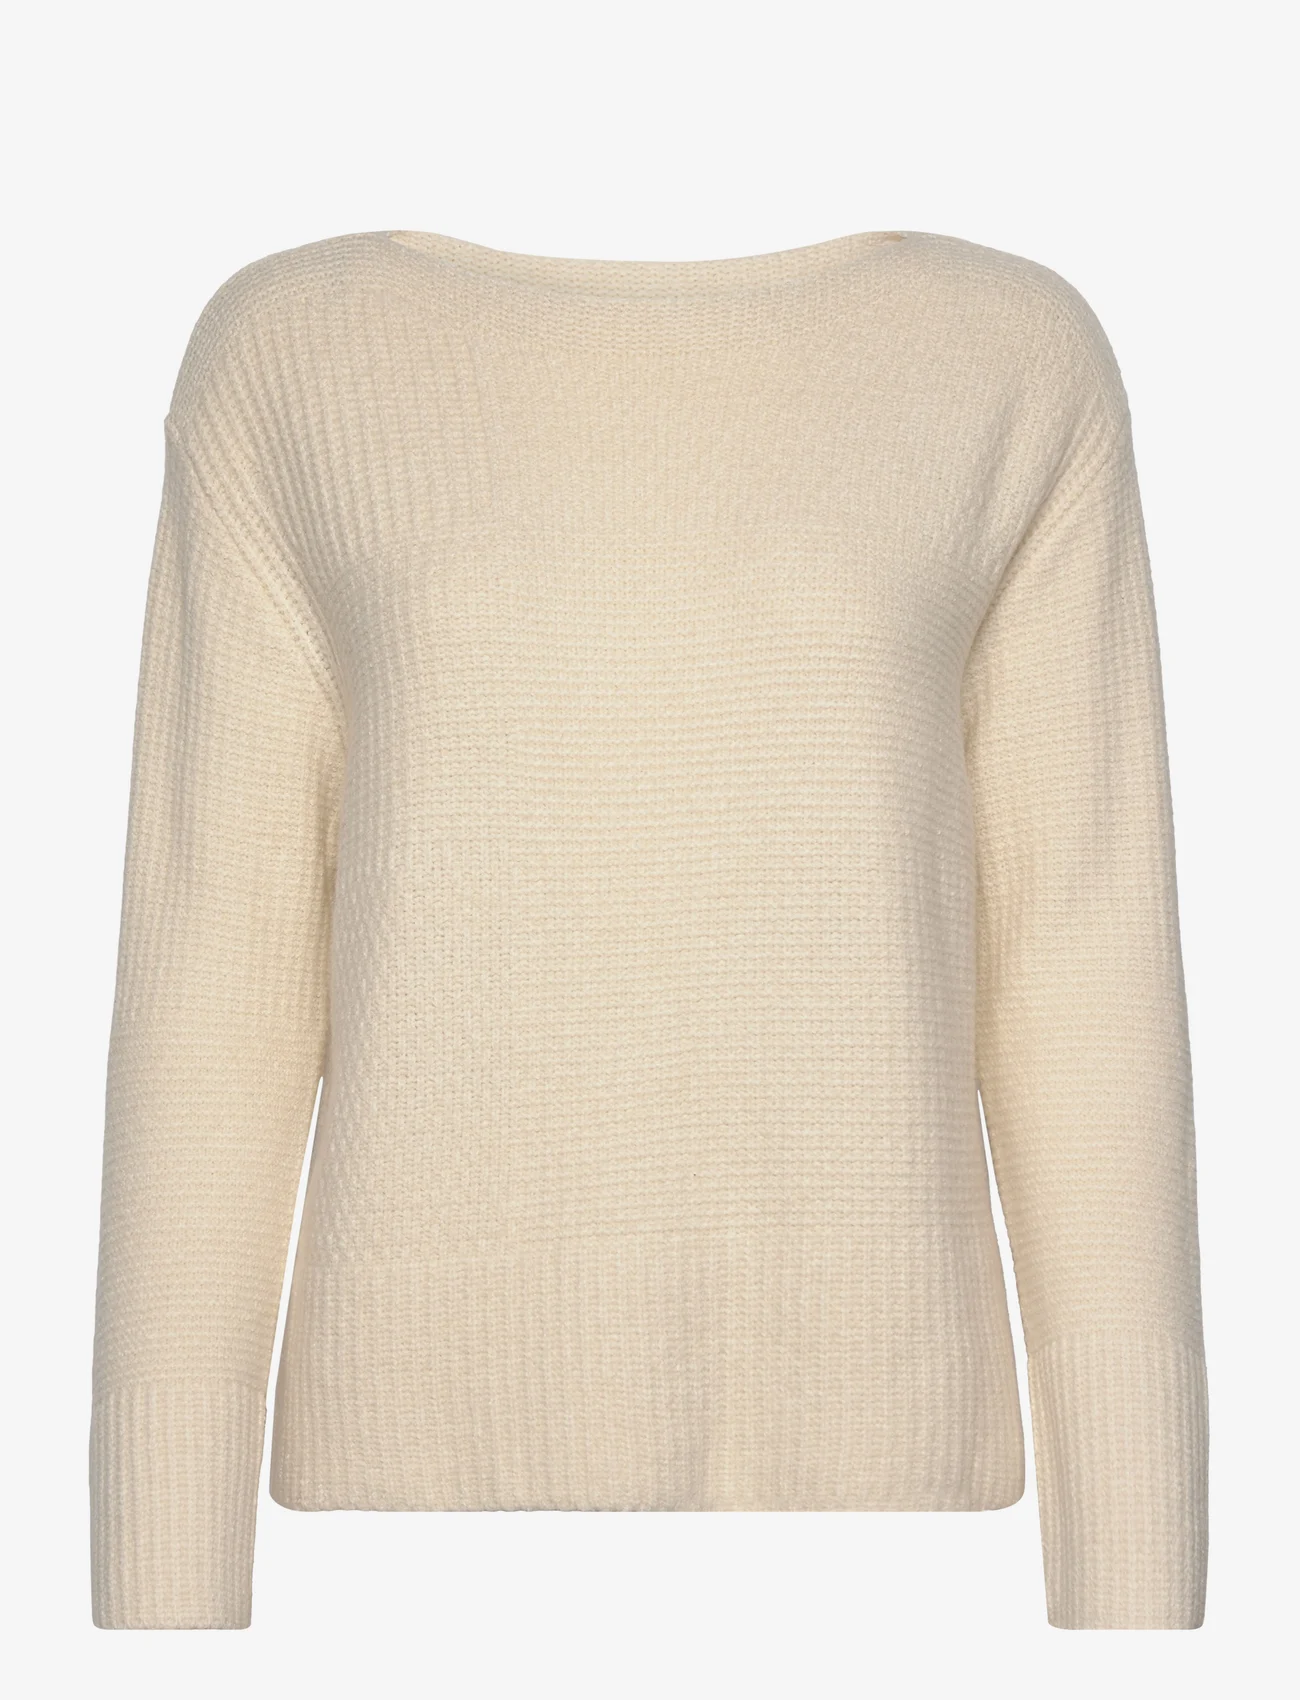 Tom Tailor - Knit patched boatneck - strikkegensere - soft beige solid - 0